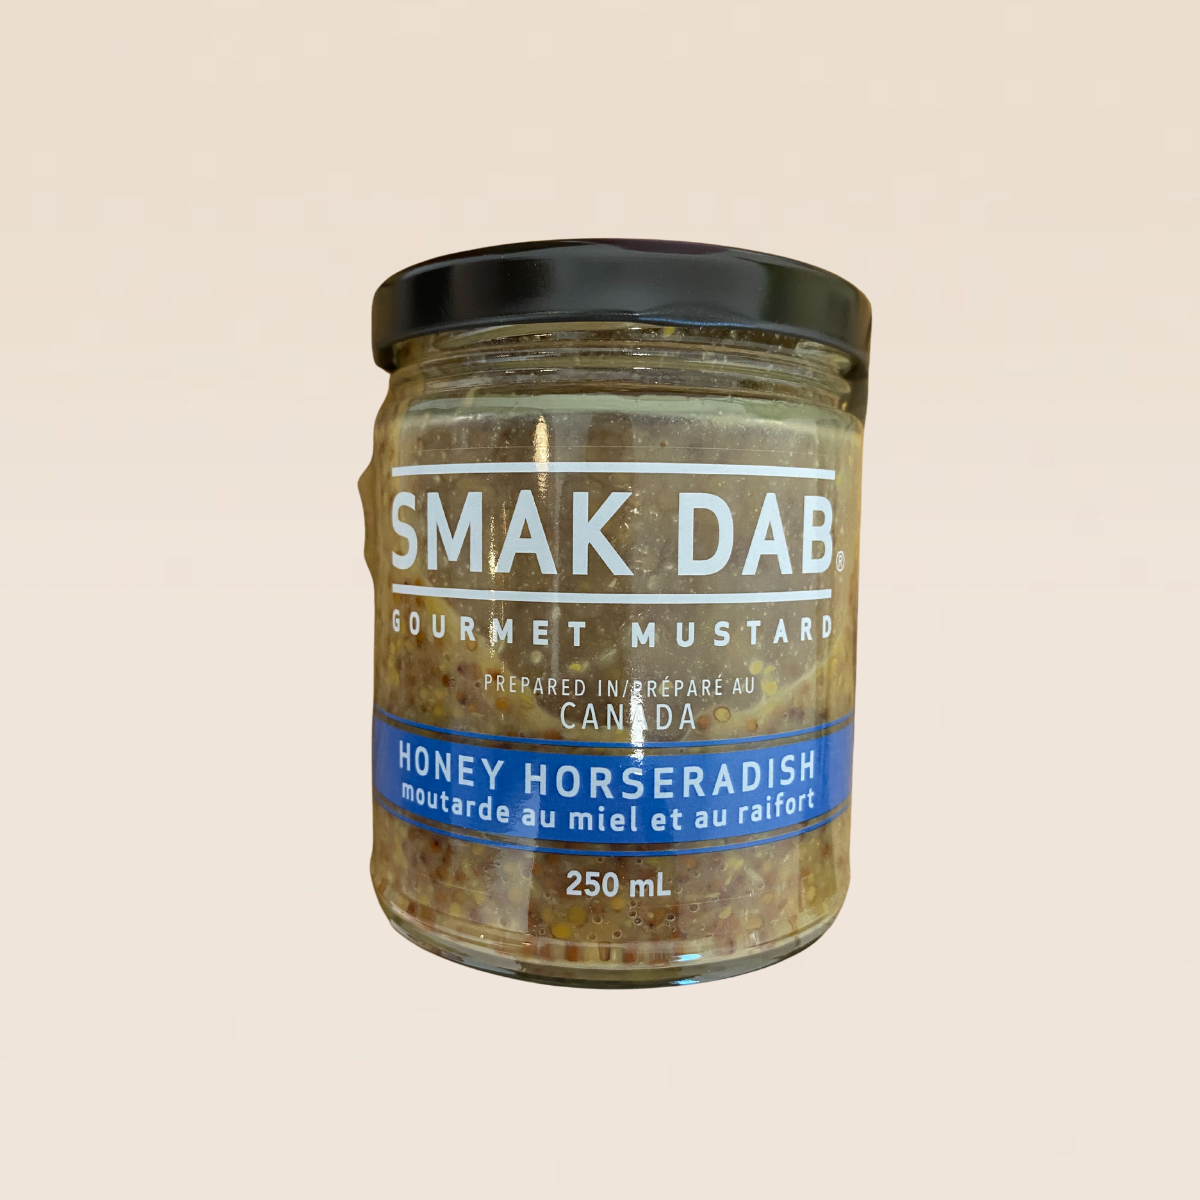 Smak Dab Mustard 250 ml jars